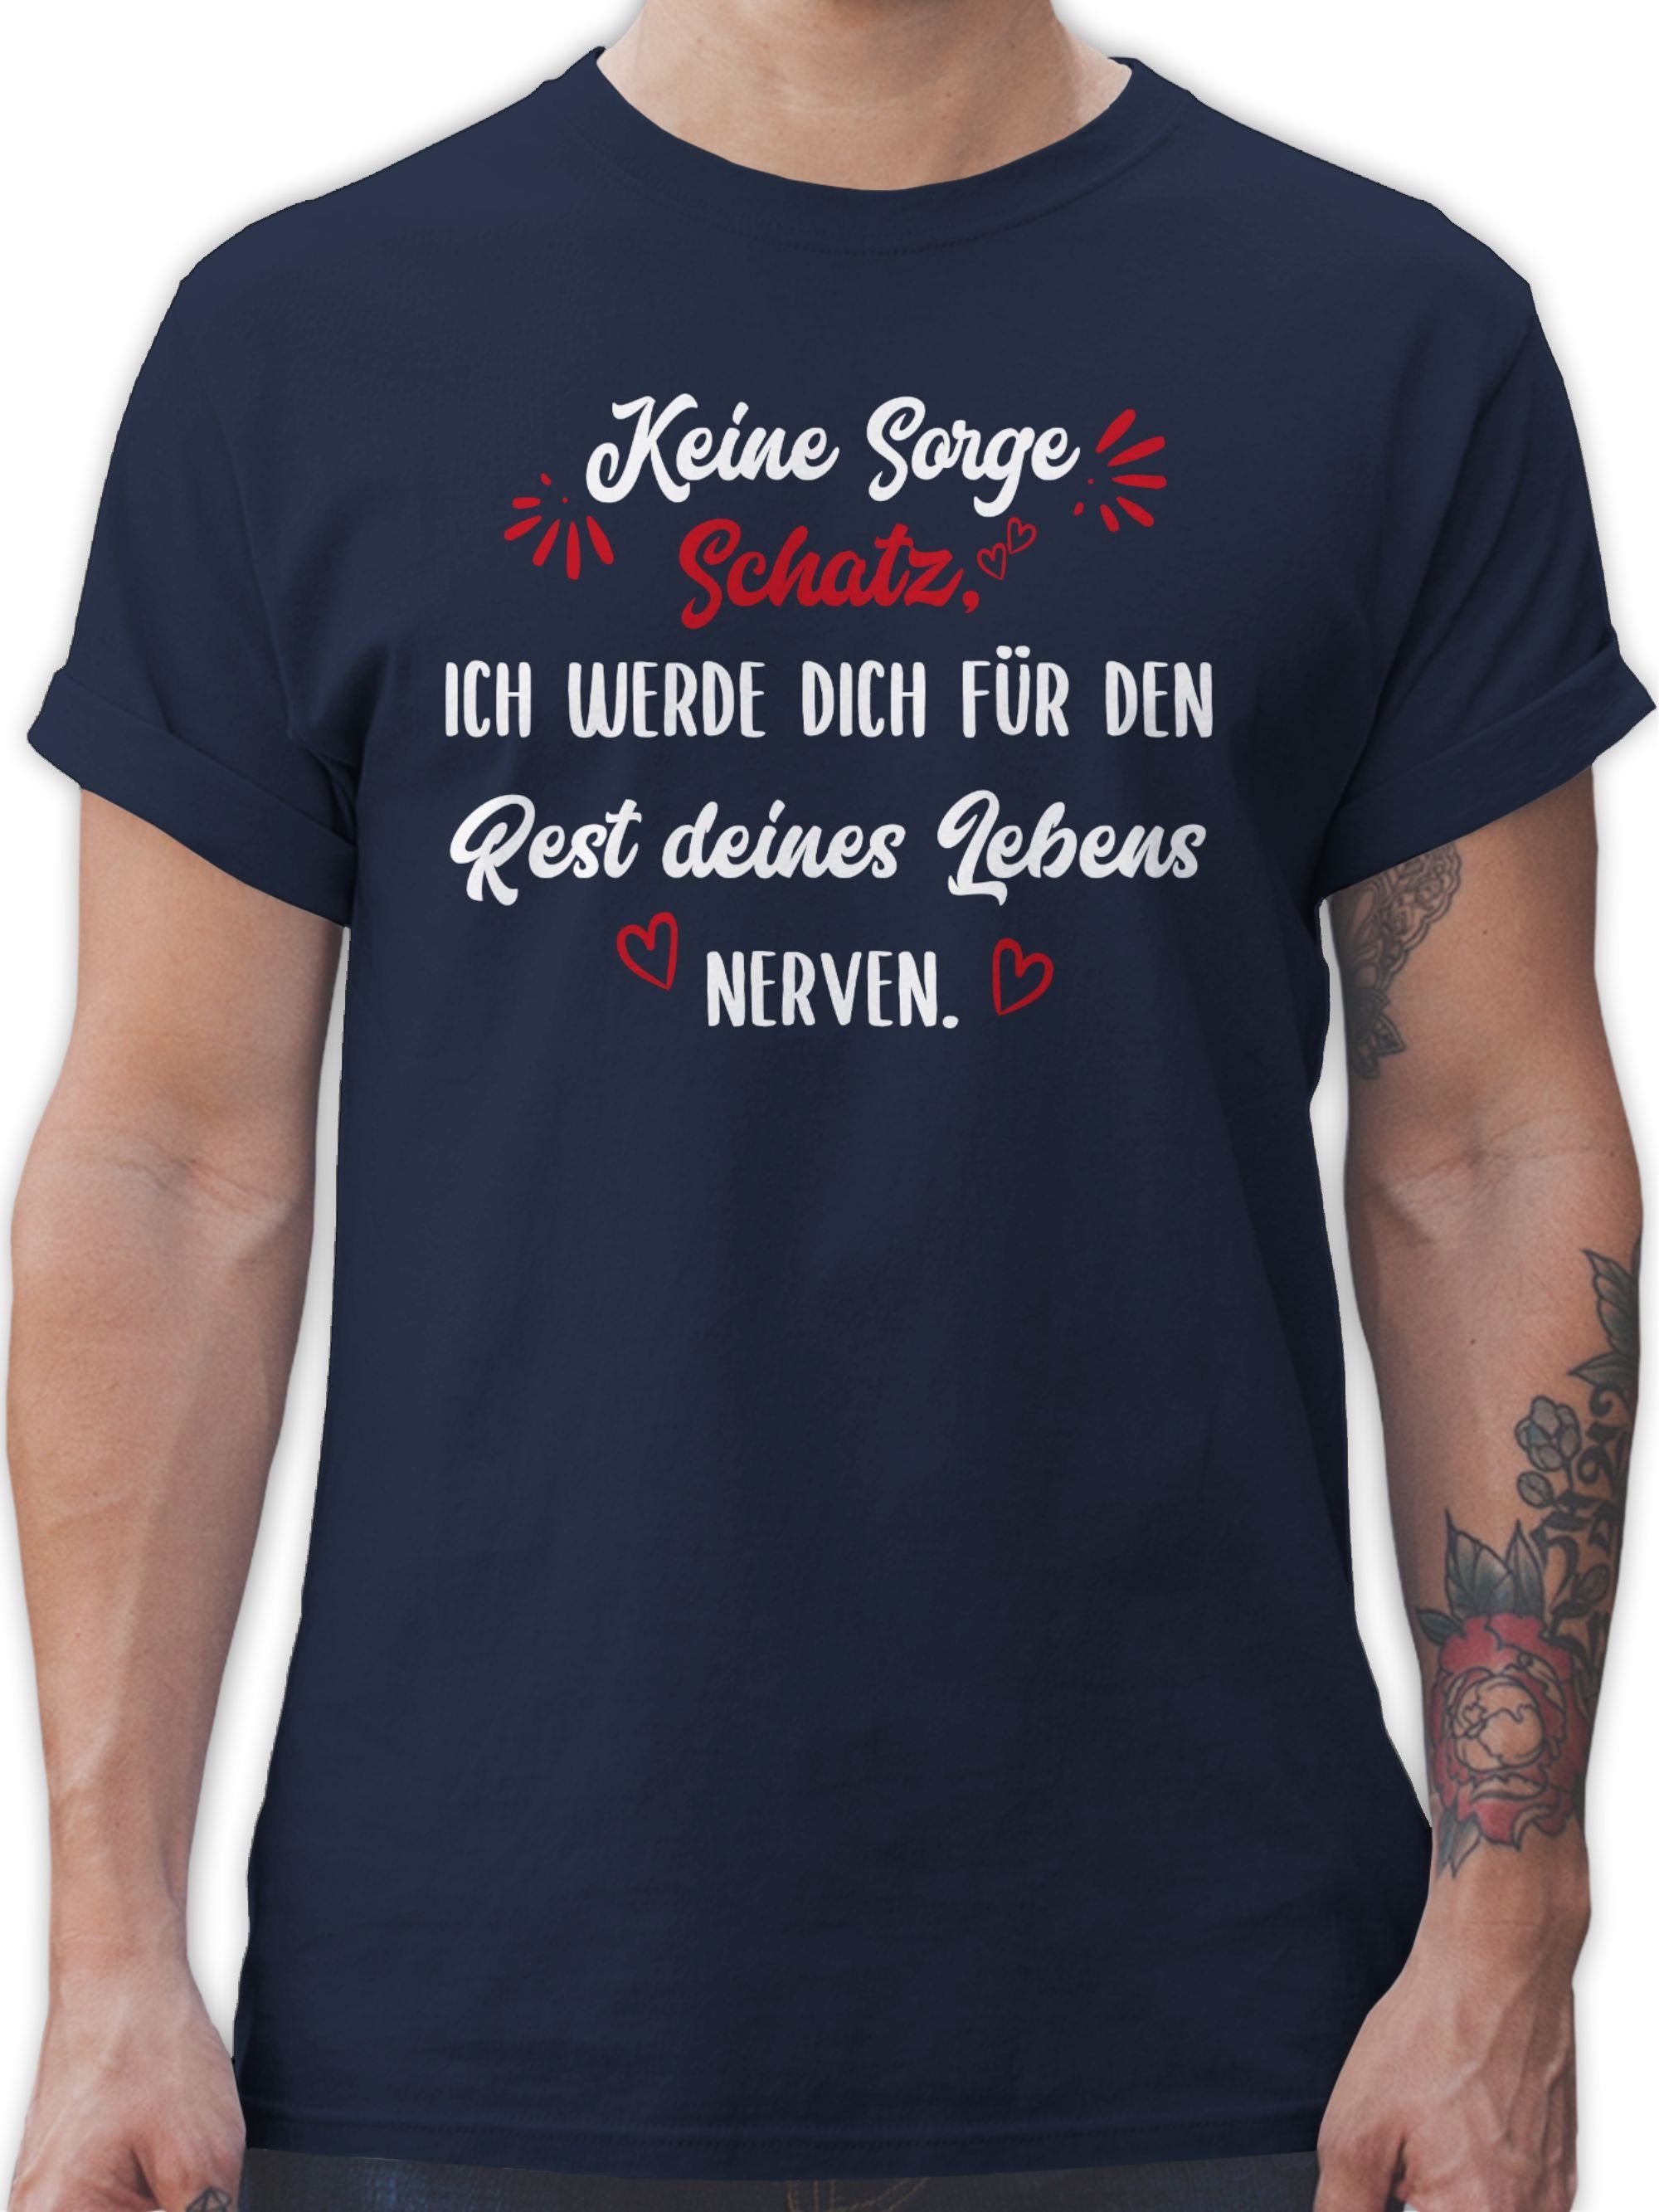 Shirtracer T-Shirt - Lebens Liebe den Schatz für Navy Keine Partner Blau dich 2 Valentinstag Ich Sorge deines Rest werde nerven